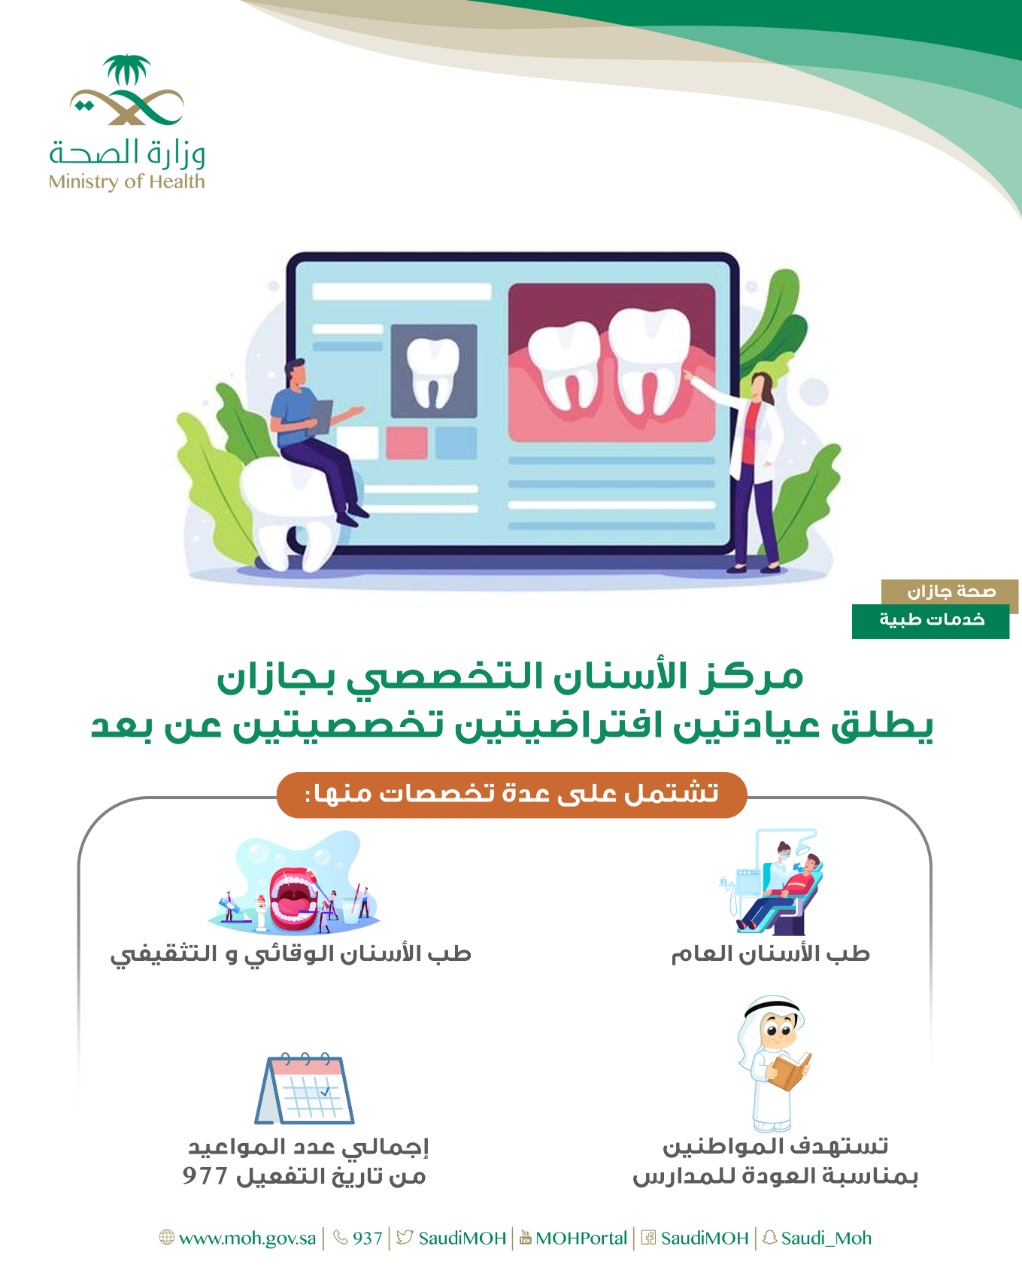 مركز الأسنان التخصصي بجازان يُطلق عيادتين افتراضية تخصصية عن بعد